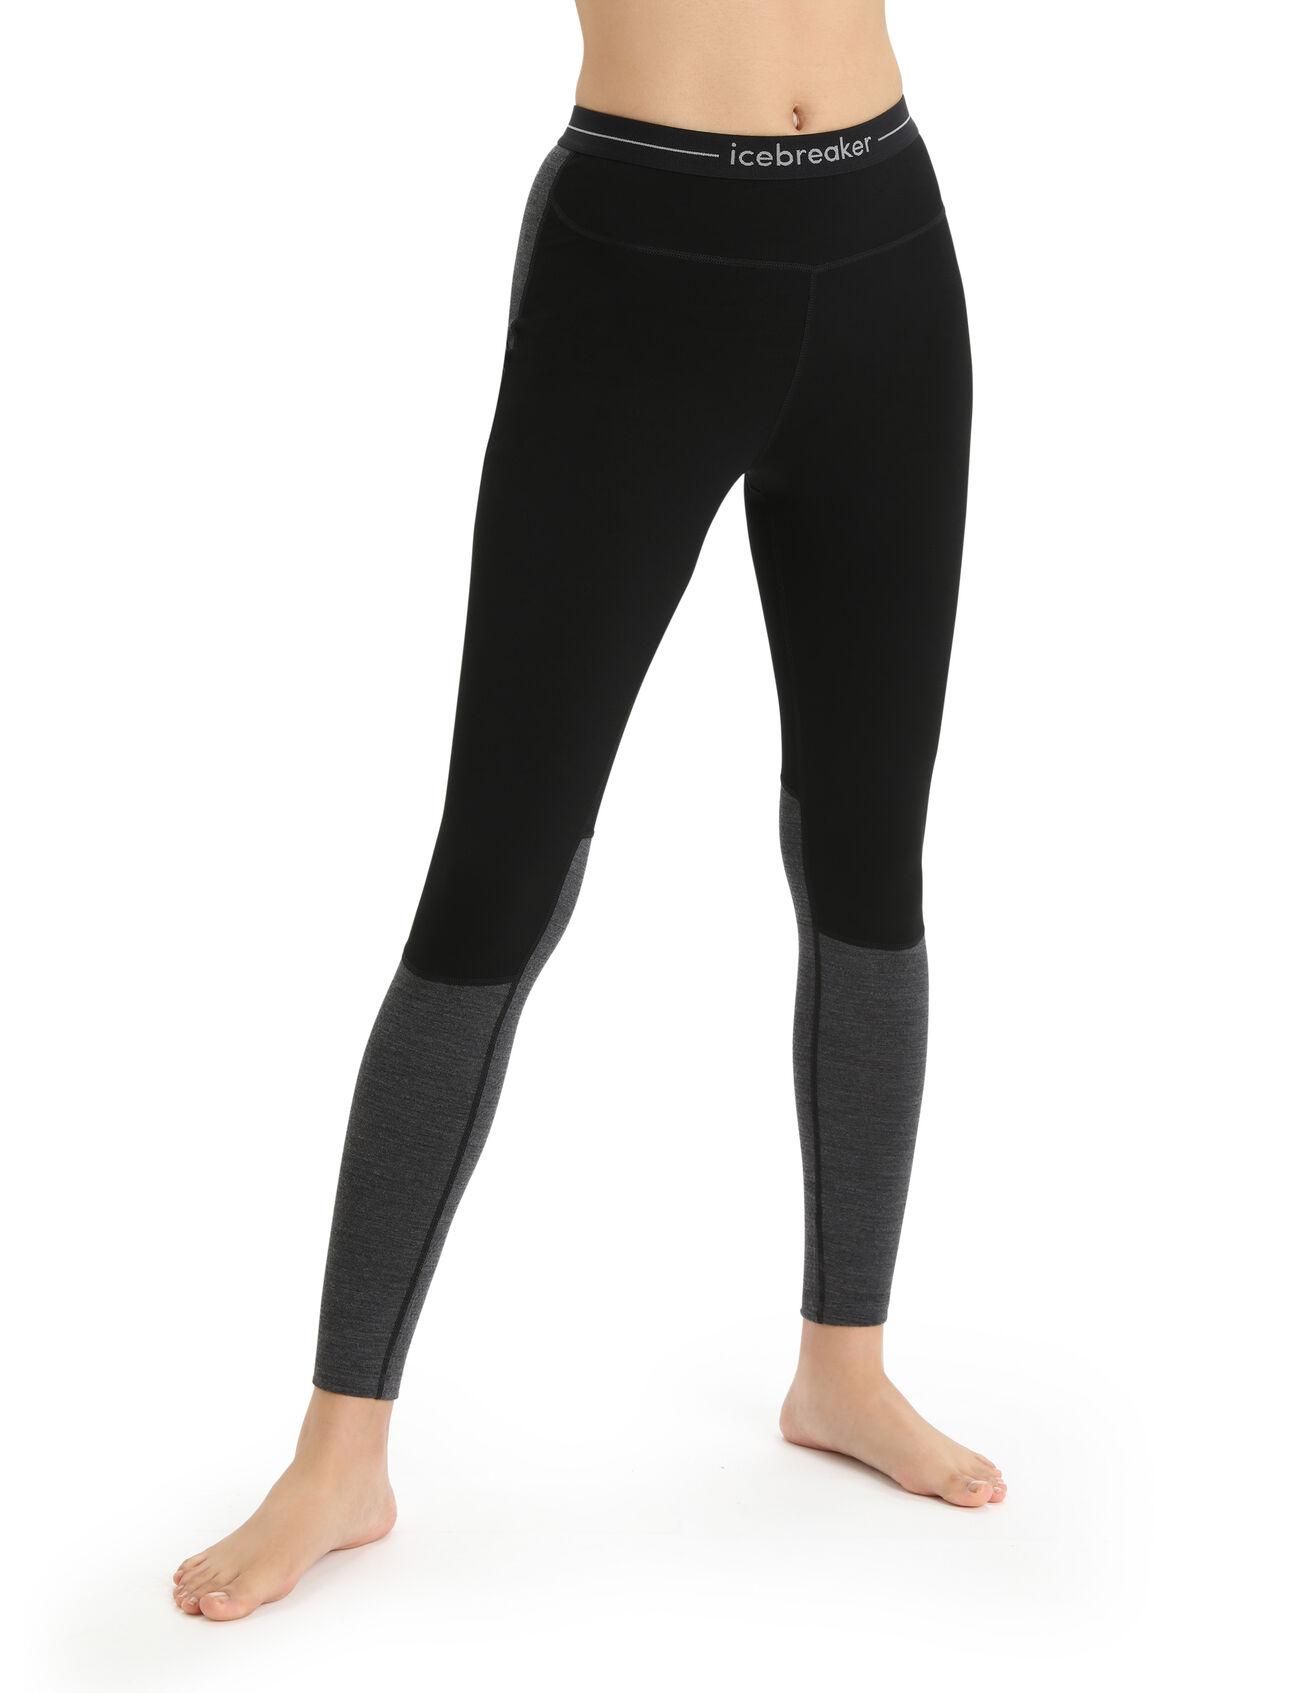 Dames 200 ZoneKnit™ legging van merinowol De 200 ZoneKnit™ legging is een middelzware base layer legging die is gemaakt om de temperatuur te reguleren tijdens intensieve activiteiten. De legging is gemaakt van 100% zuivere en natuurlijke merinowol. 